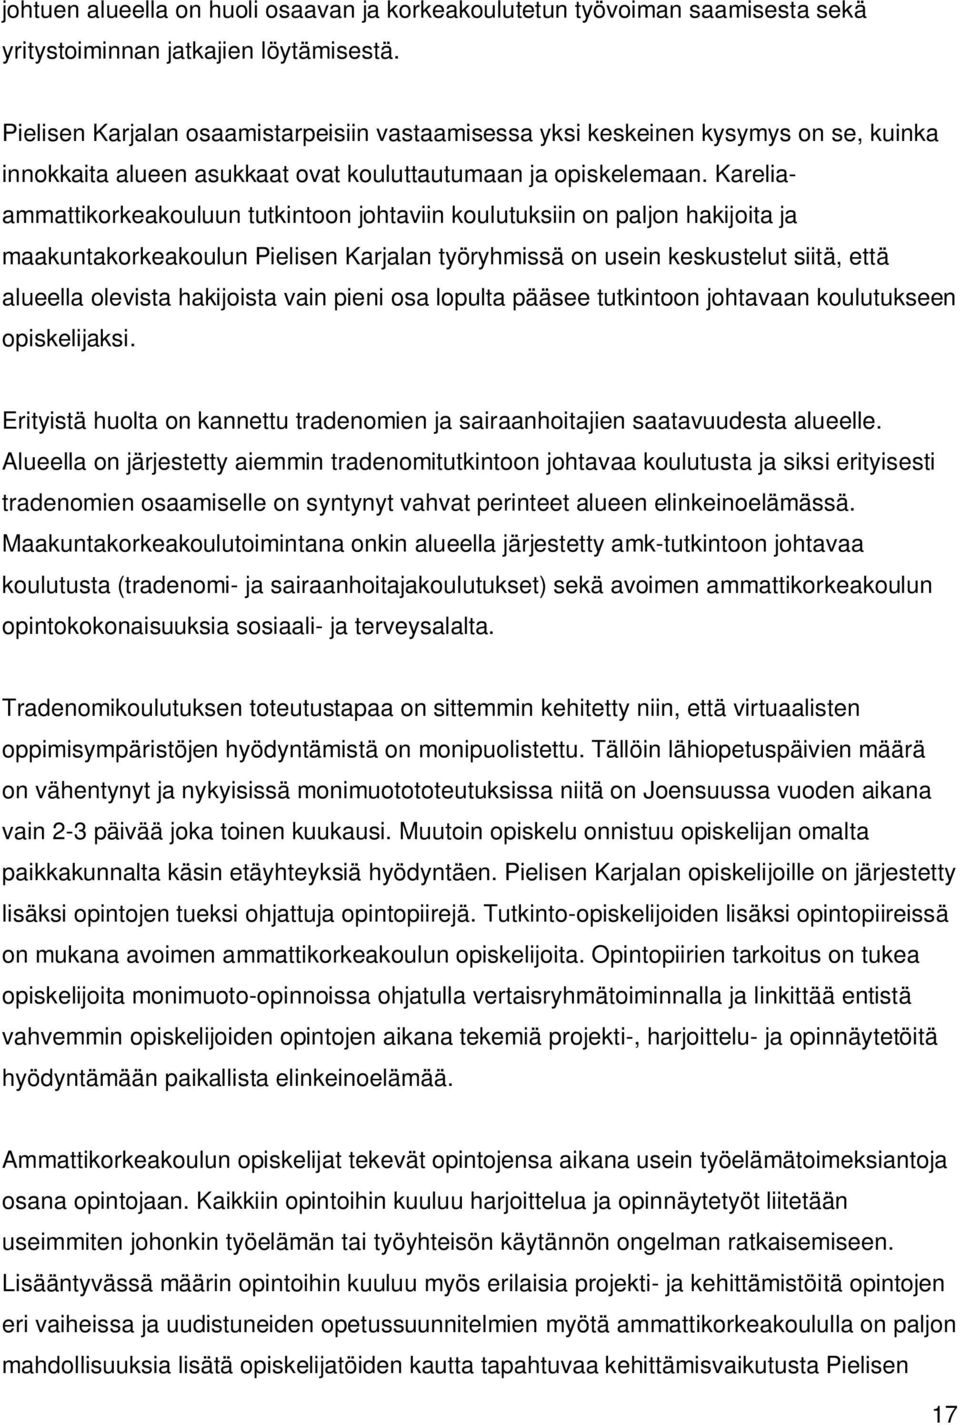 Kareliaammattikorkeakouluun tutkintoon johtaviin koulutuksiin on paljon hakijoita ja maakuntakorkeakoulun Pielisen Karjalan työryhmissä on usein keskustelut siitä, että alueella olevista hakijoista